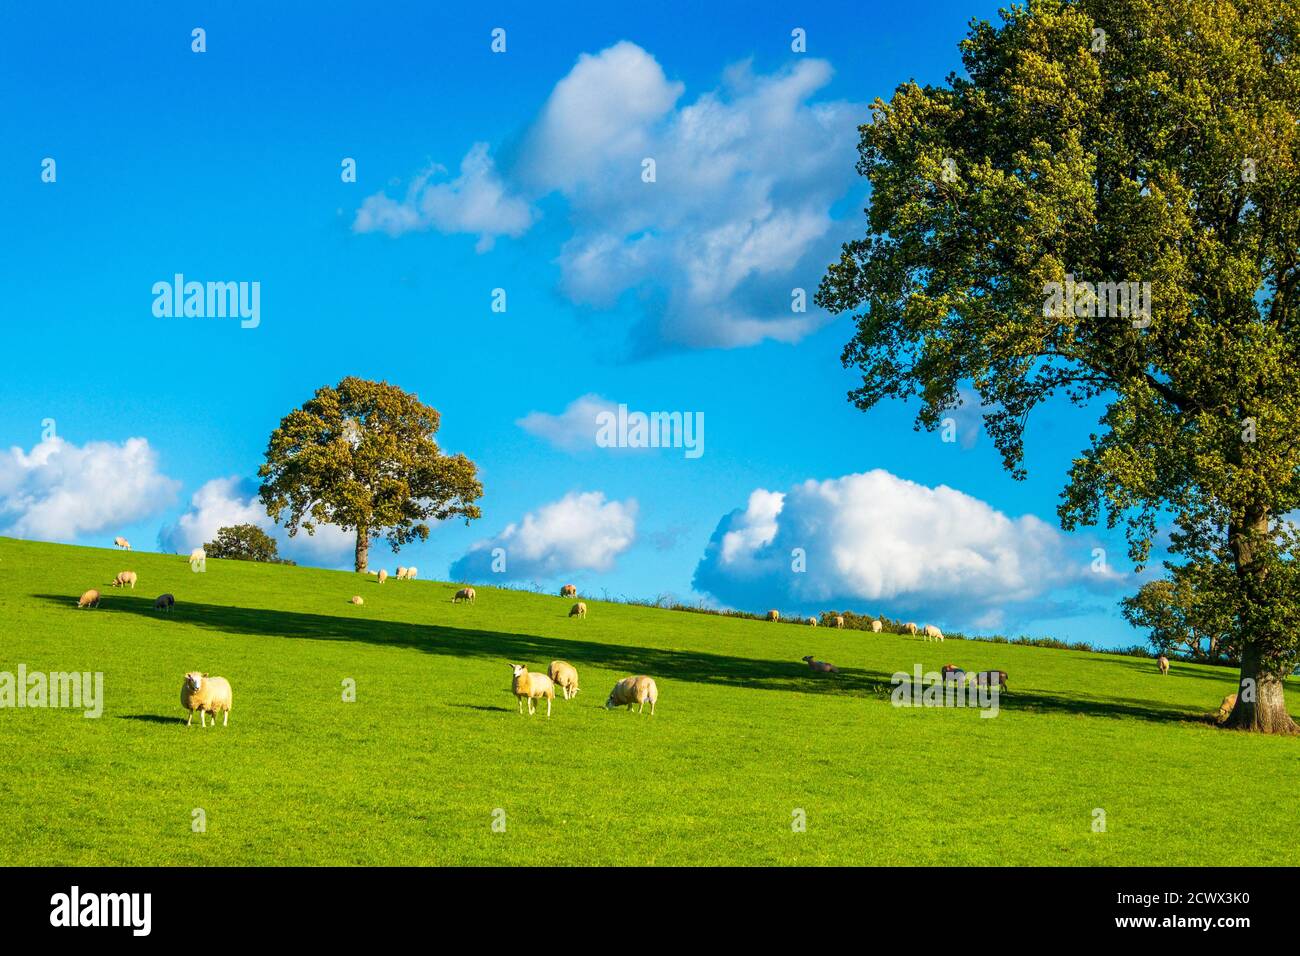 Arbres, un champ de moutons et un ciel bleu - campagne typique britannique sur la frontière anglais / gallois. Banque D'Images